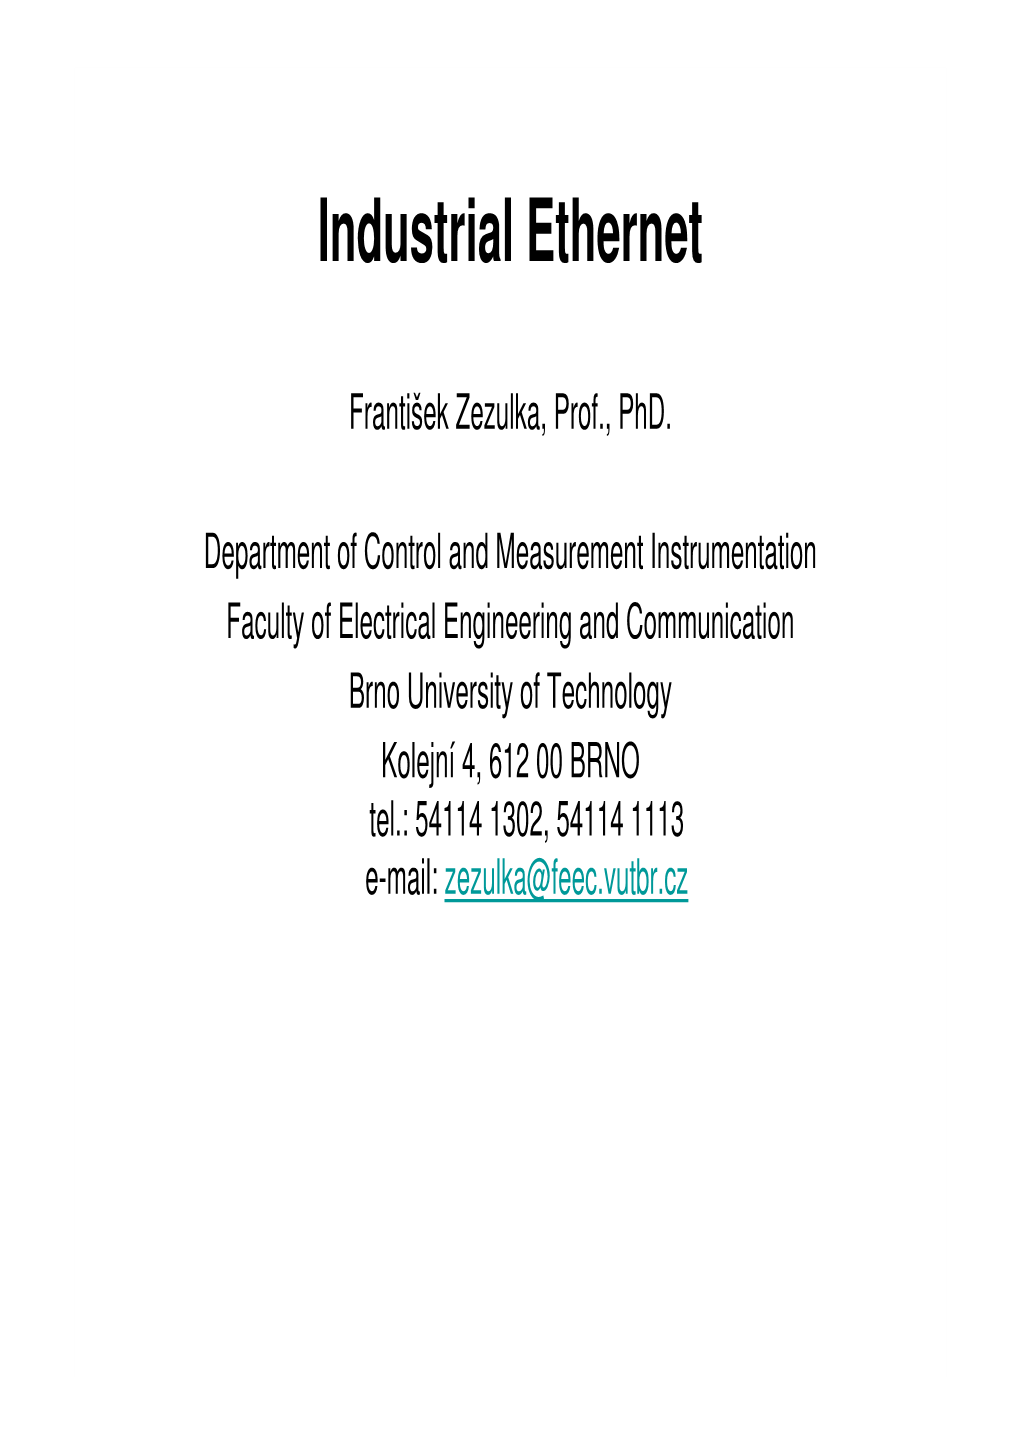 Industrial Ethernet